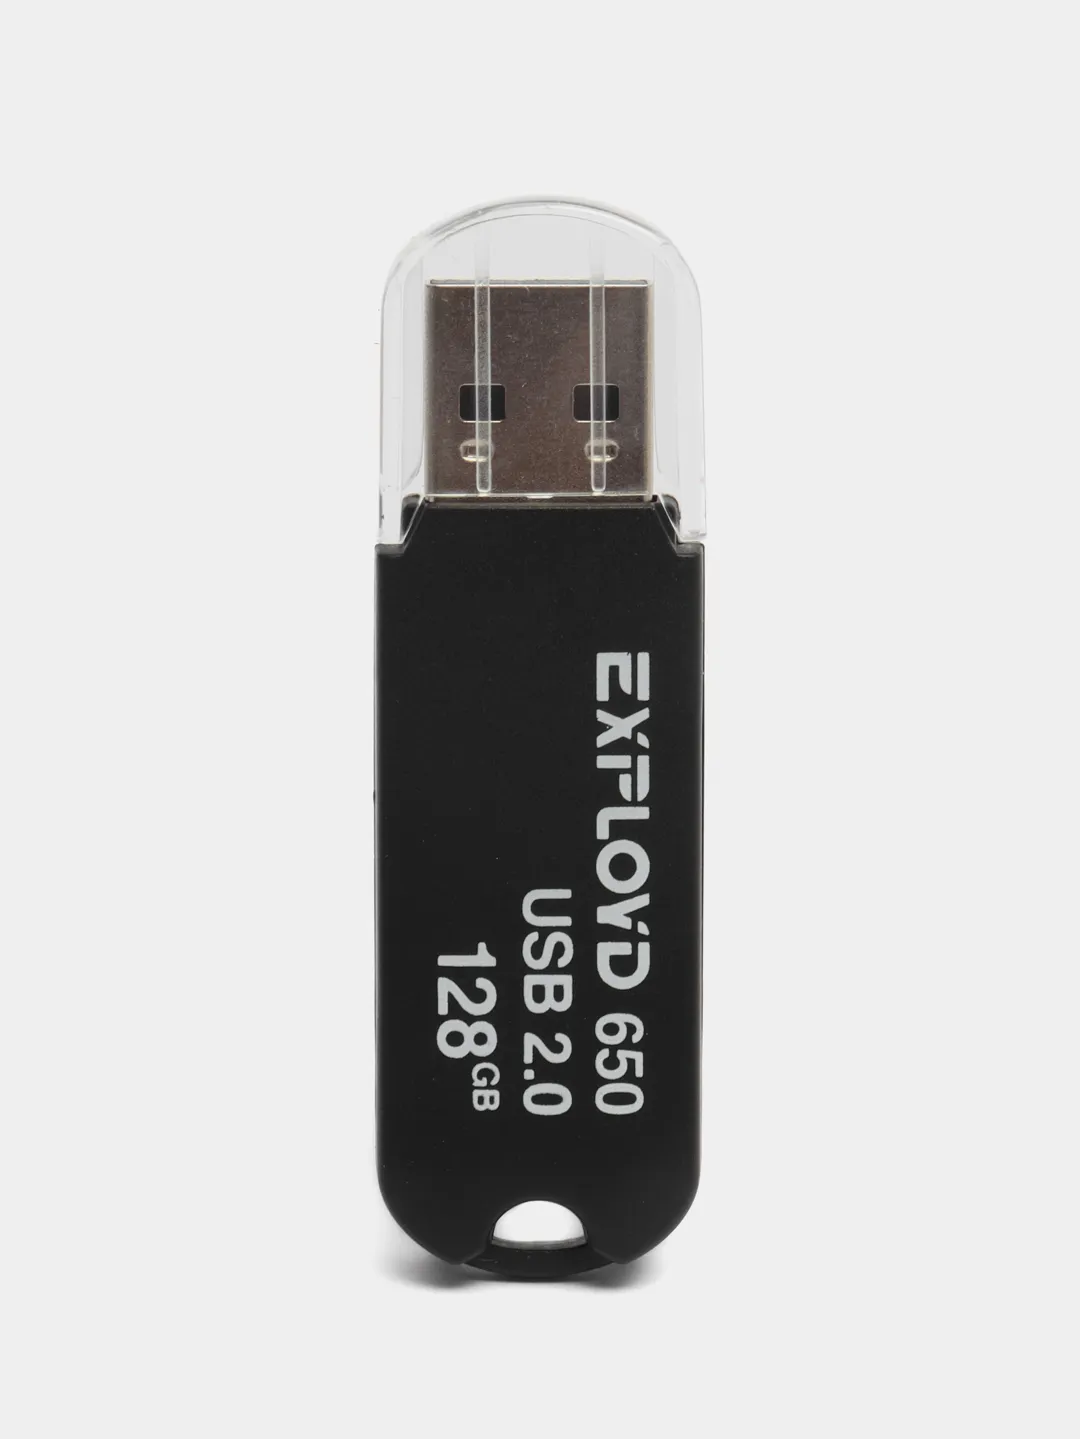 Для подключения аналоговой гарнитуры к USB разъему ПК